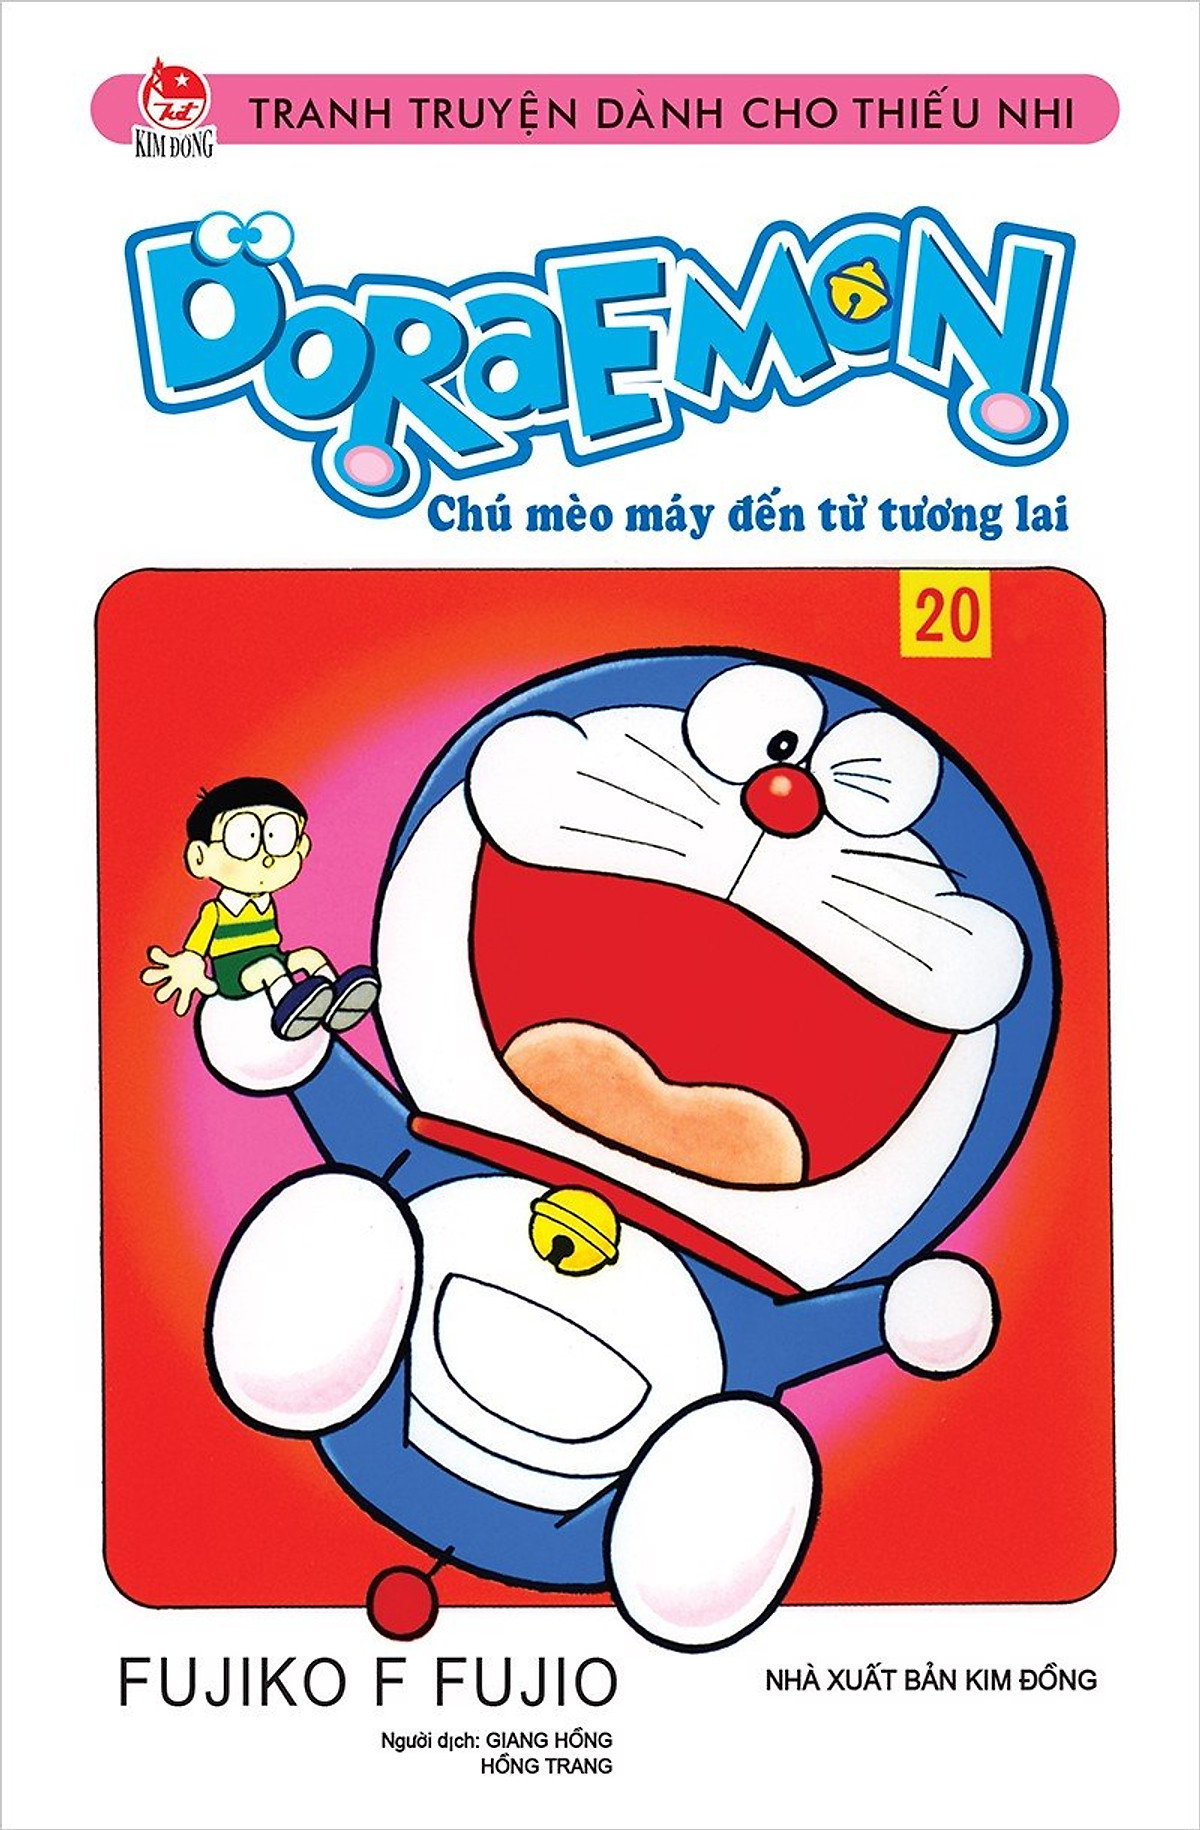 Nếu bạn đang tìm kiếm những câu chuyện thú vị của Doraemon thì không nên bỏ qua bộ truyện ngắn Doraemon. Đây là món quà tuyệt vời cho những người yêu thích Doraemon, với nhiều câu chuyện ngắn đầy hấp dẫn và giải trí.